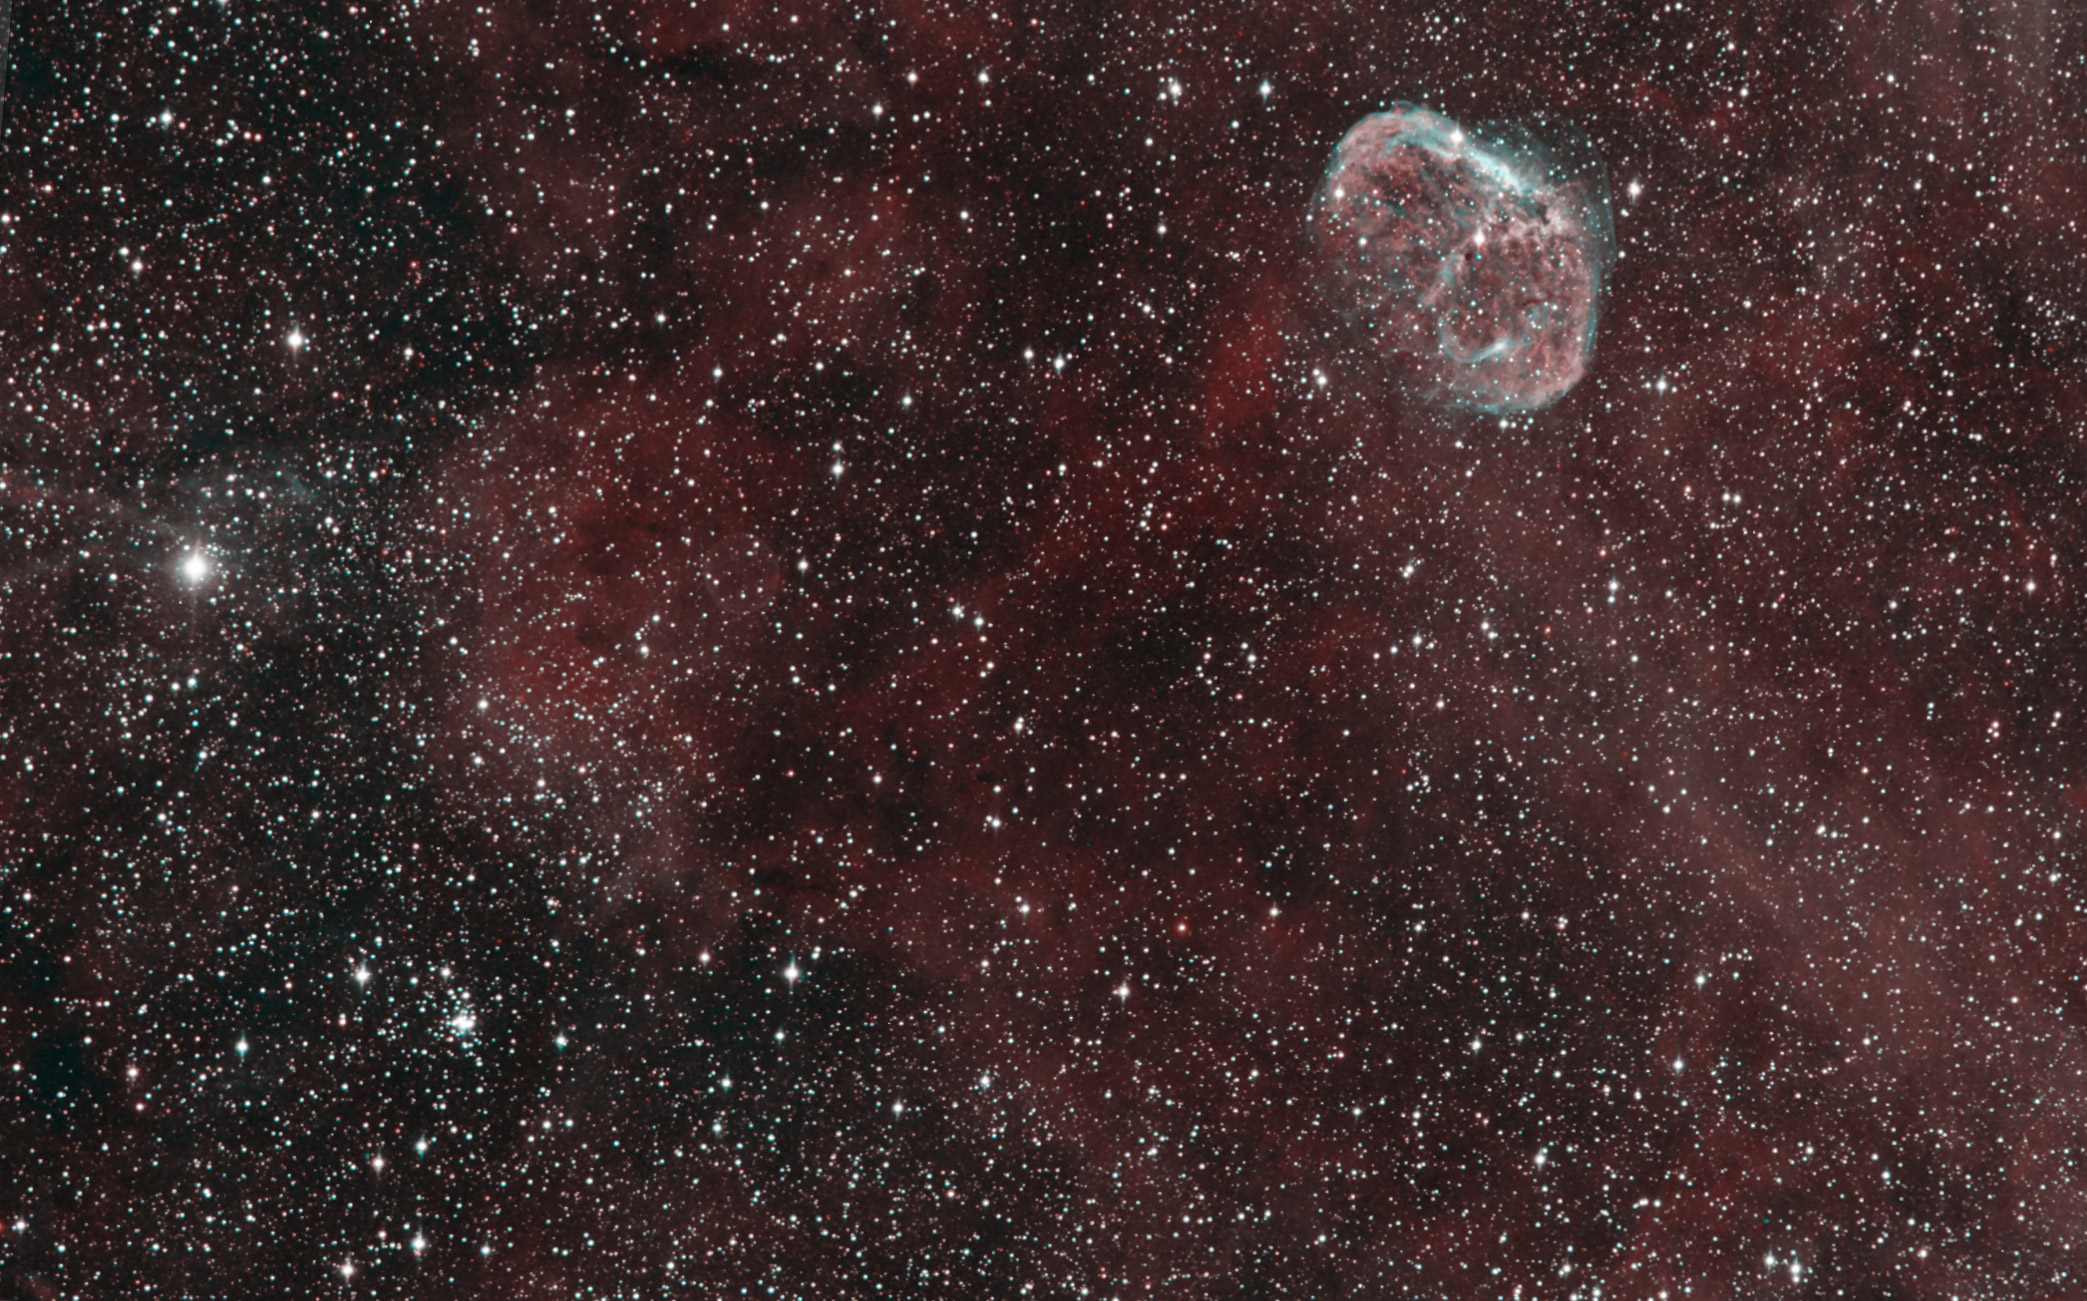  the Crescent and Soap Bubble Nebula